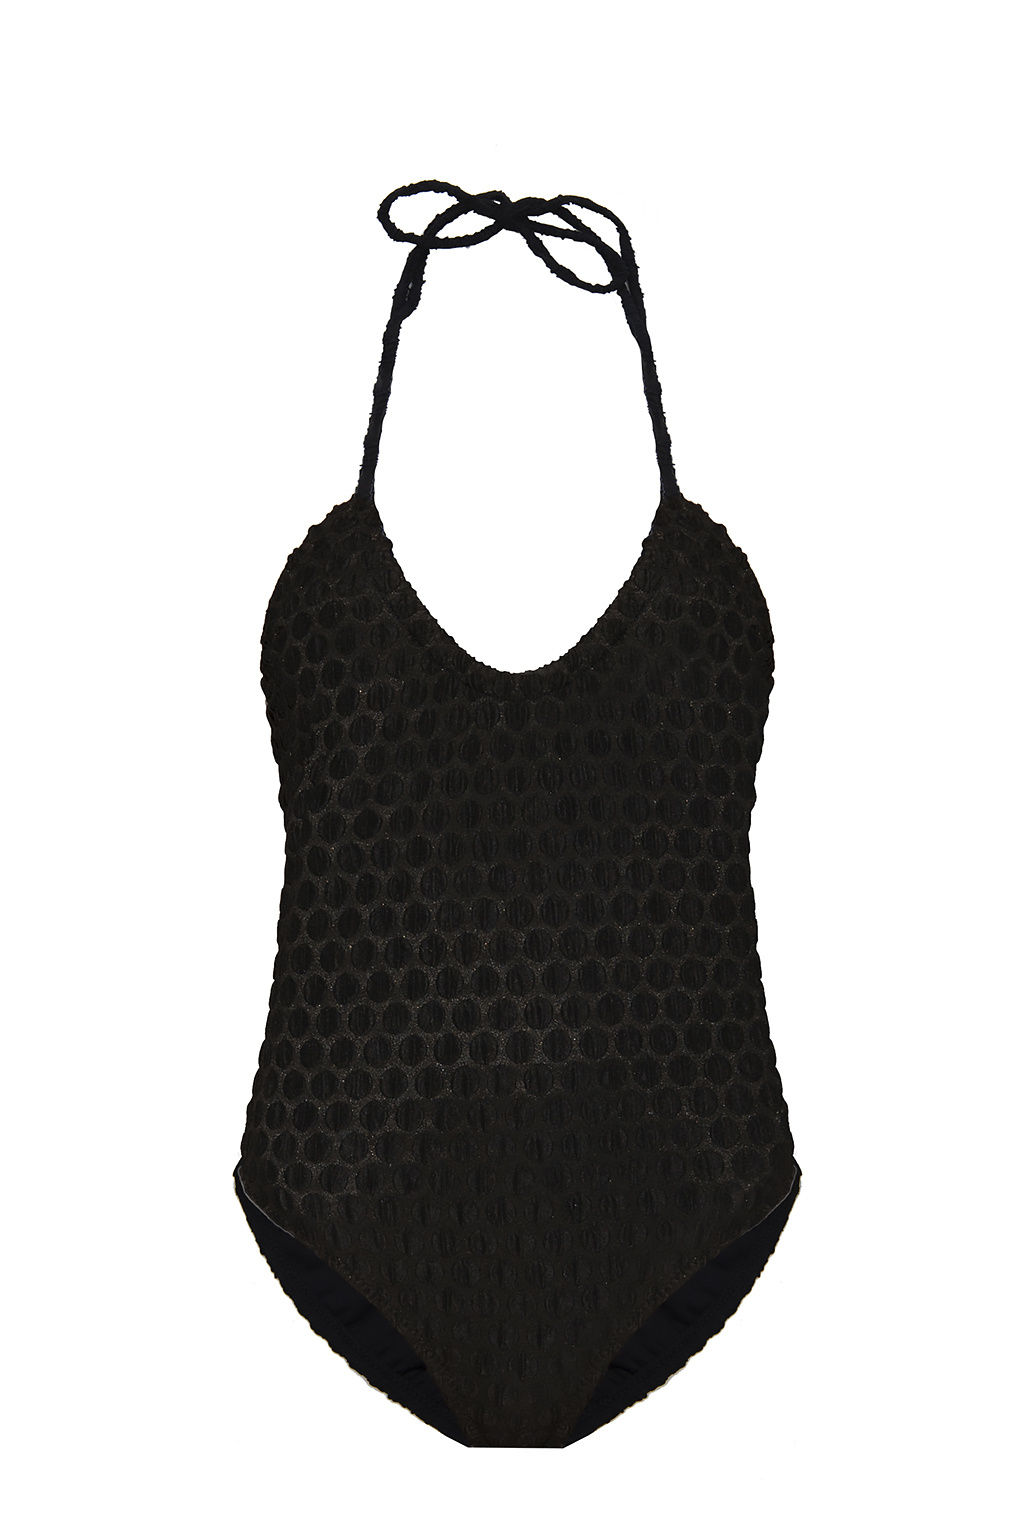 Le Petit Trou ‘Nona’ one-piece swimsuit